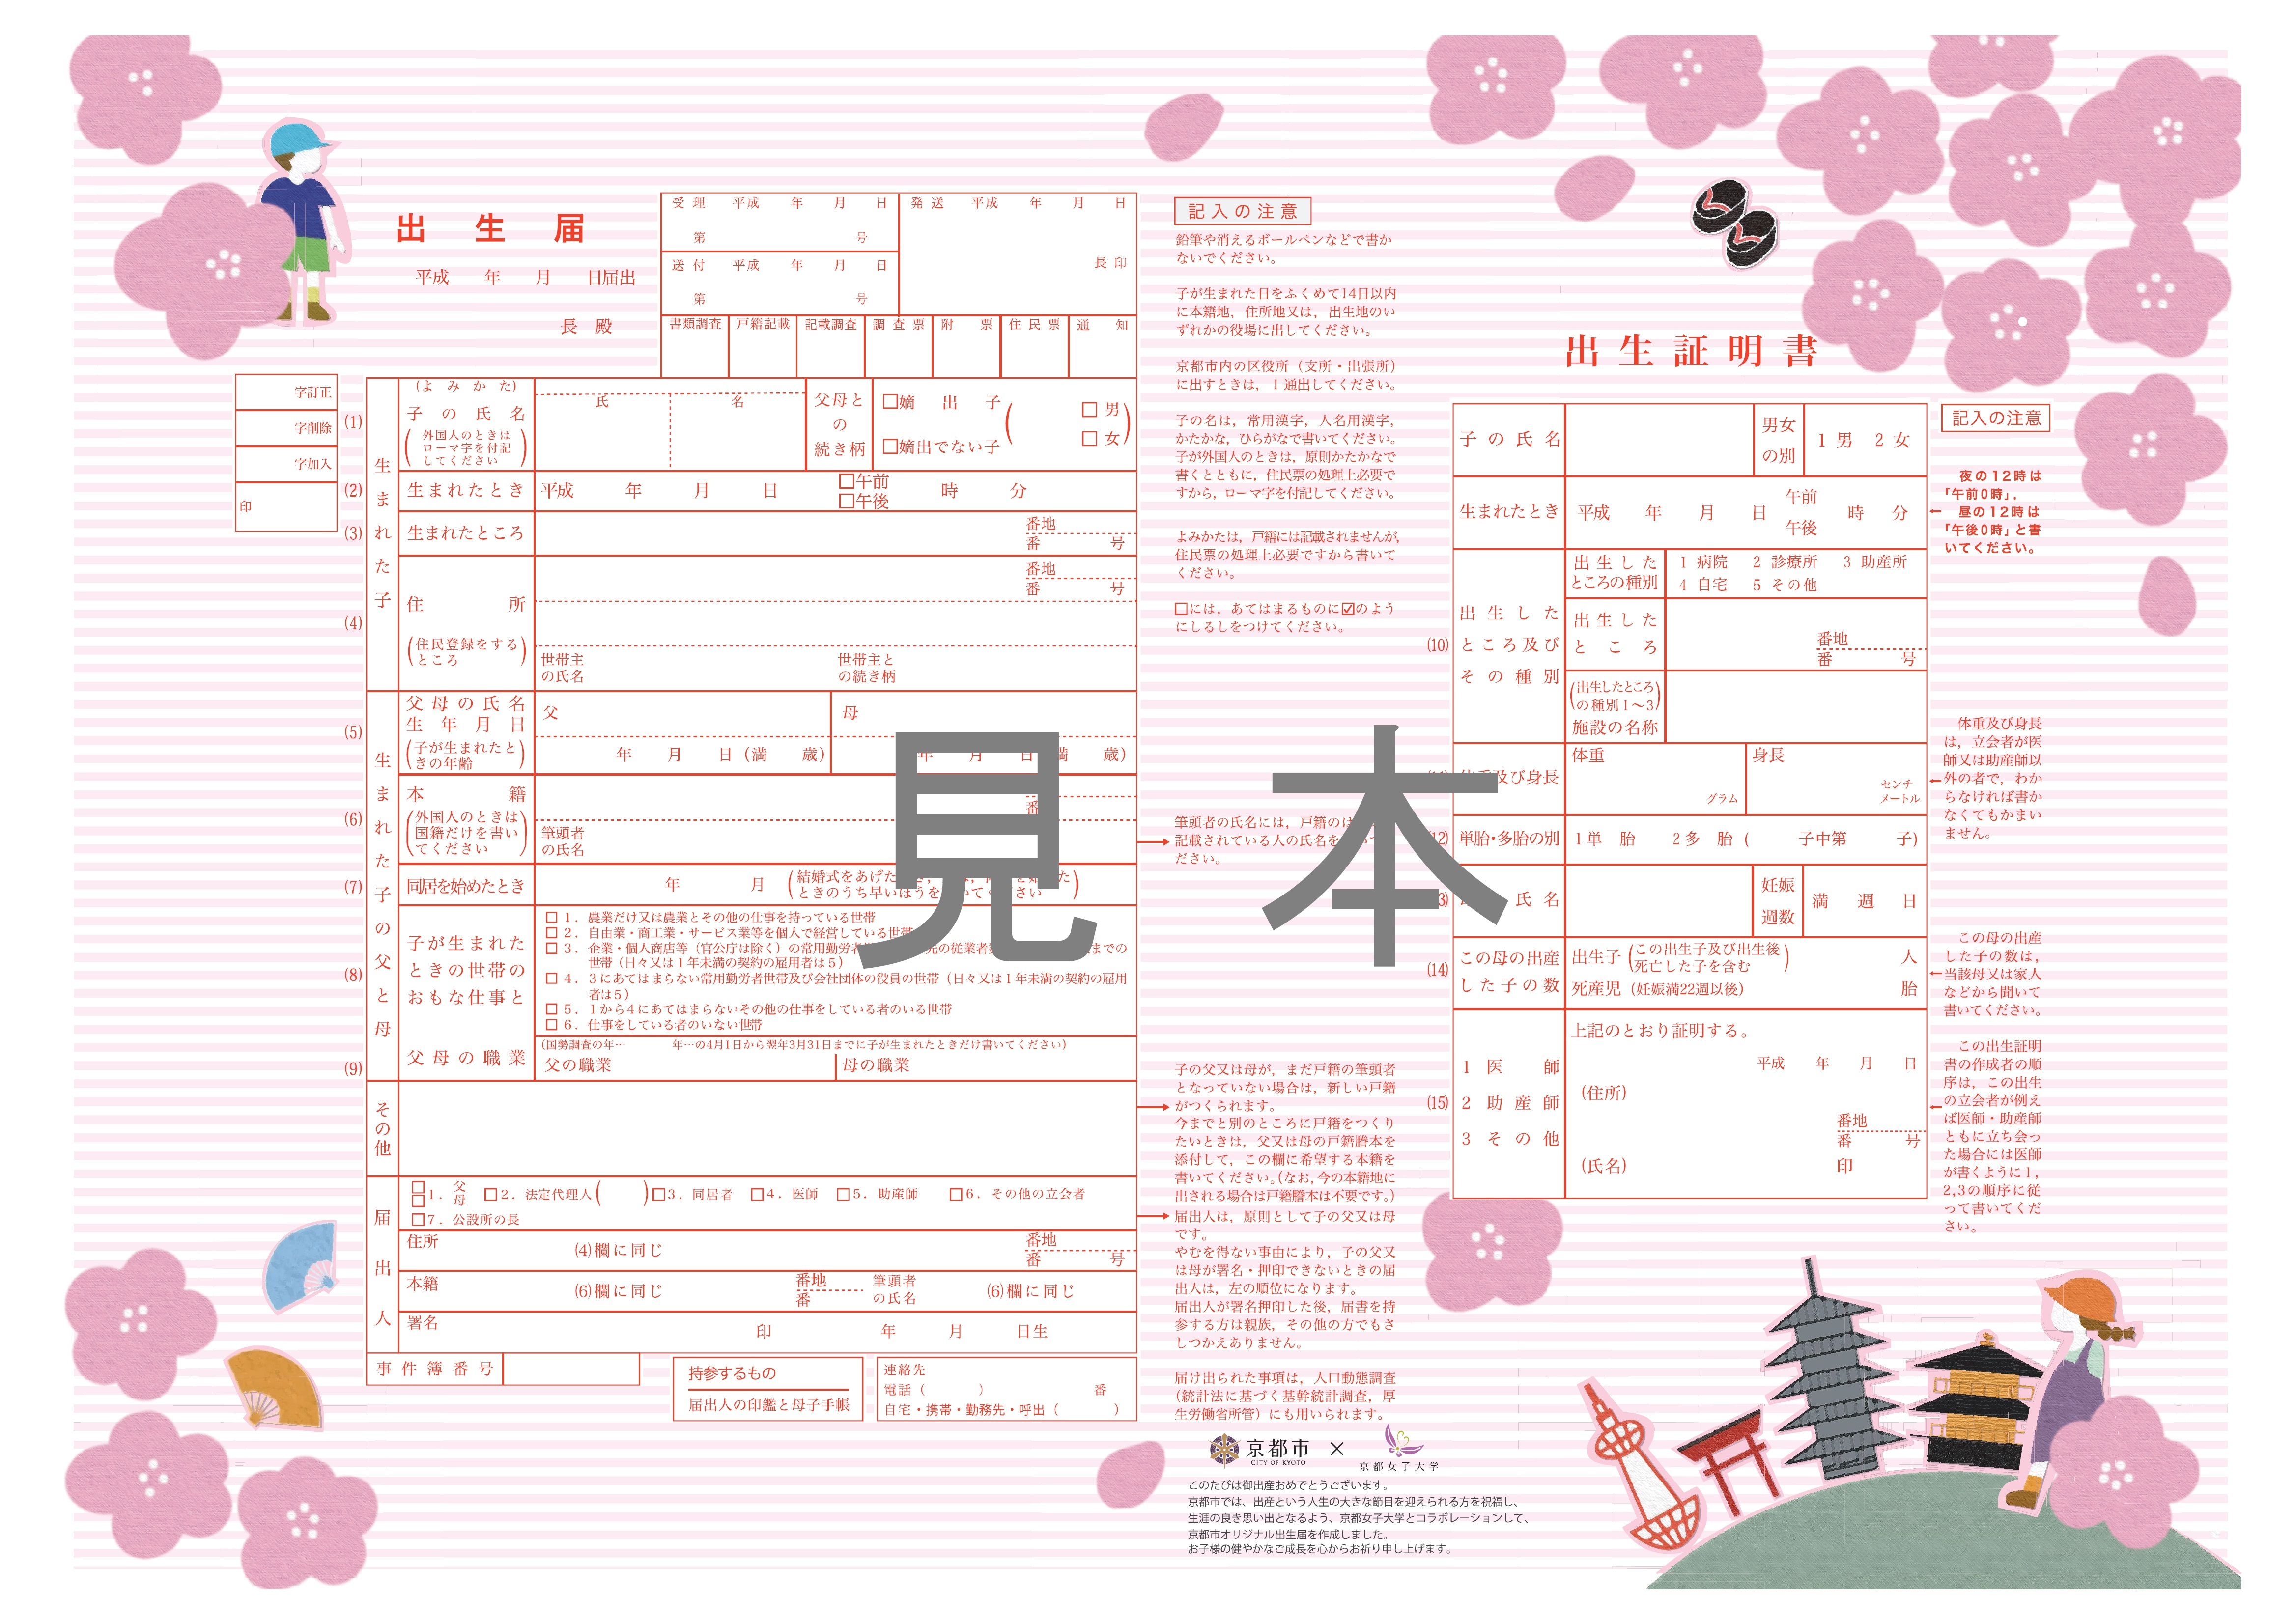 京都市 京都市オリジナル婚姻届 出生届を作成しました